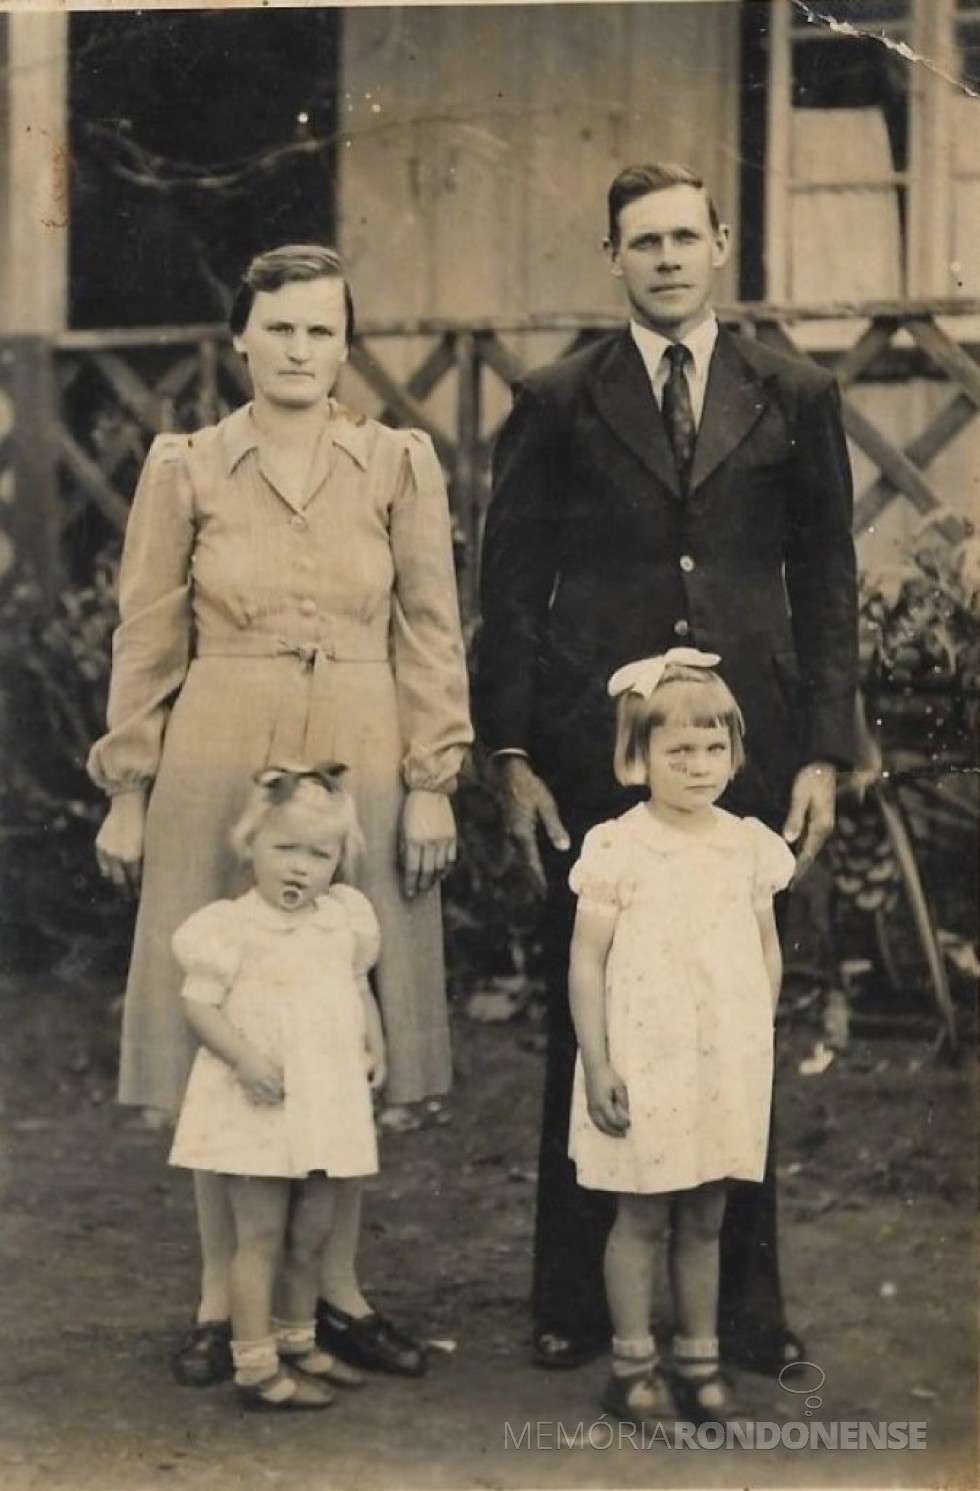 || Rosa Olga e Guilherme Frederico Balkau, pioneiros rondonenses, fotografados em 1944, com as filhas Ilone e Hildegard, em Candeia, município de Santa Rosa (RS). 
Imagem: Acervo da família. - FOTO 5 - 